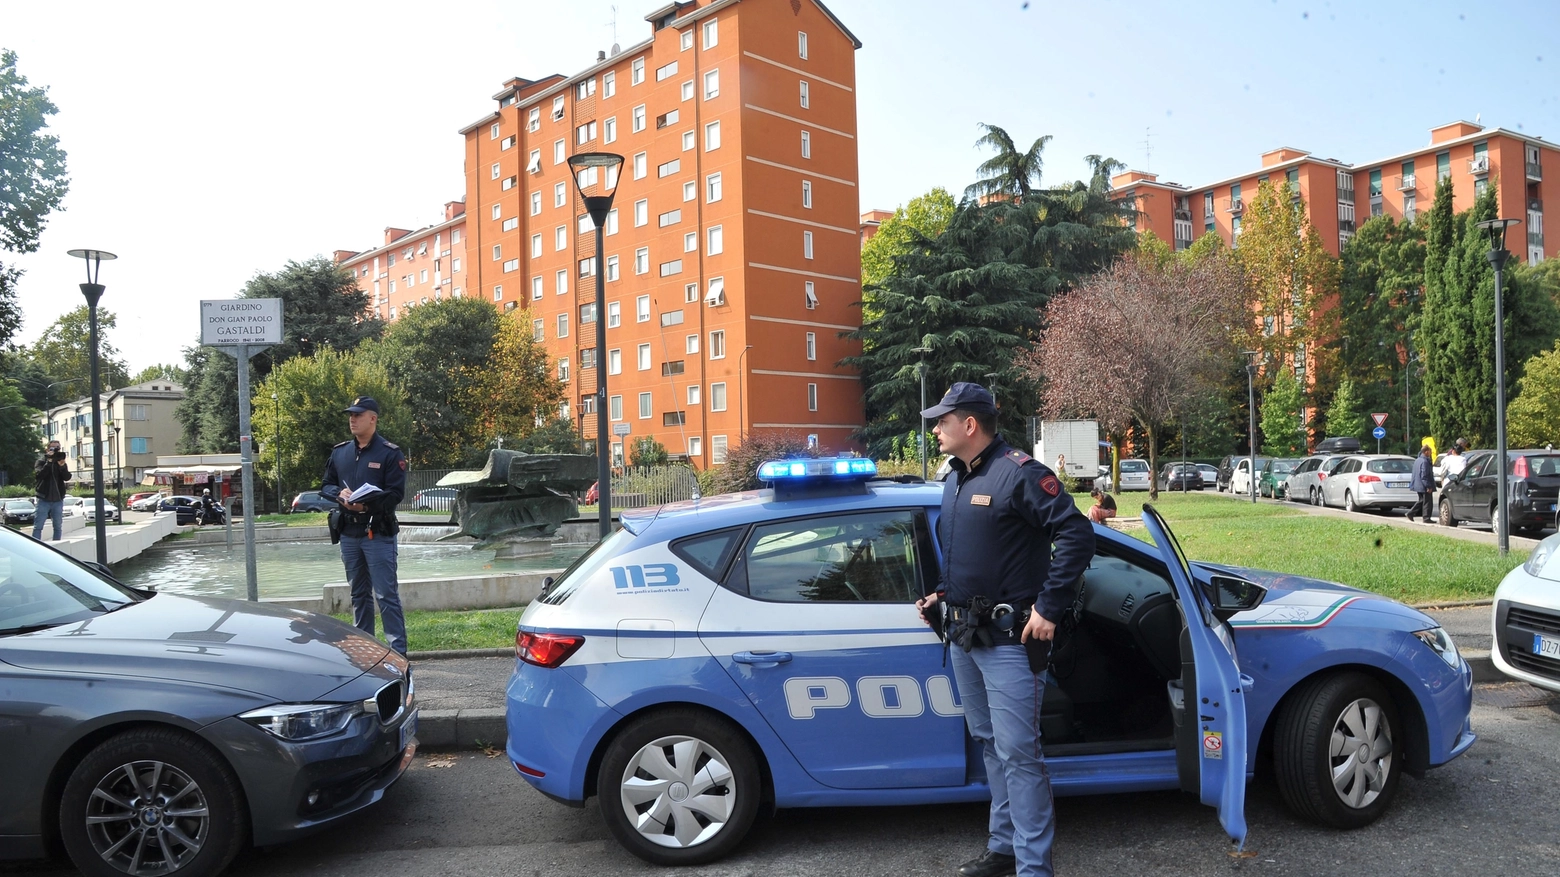 Polizia nella zona dove è avvenuta la violenza a Milano